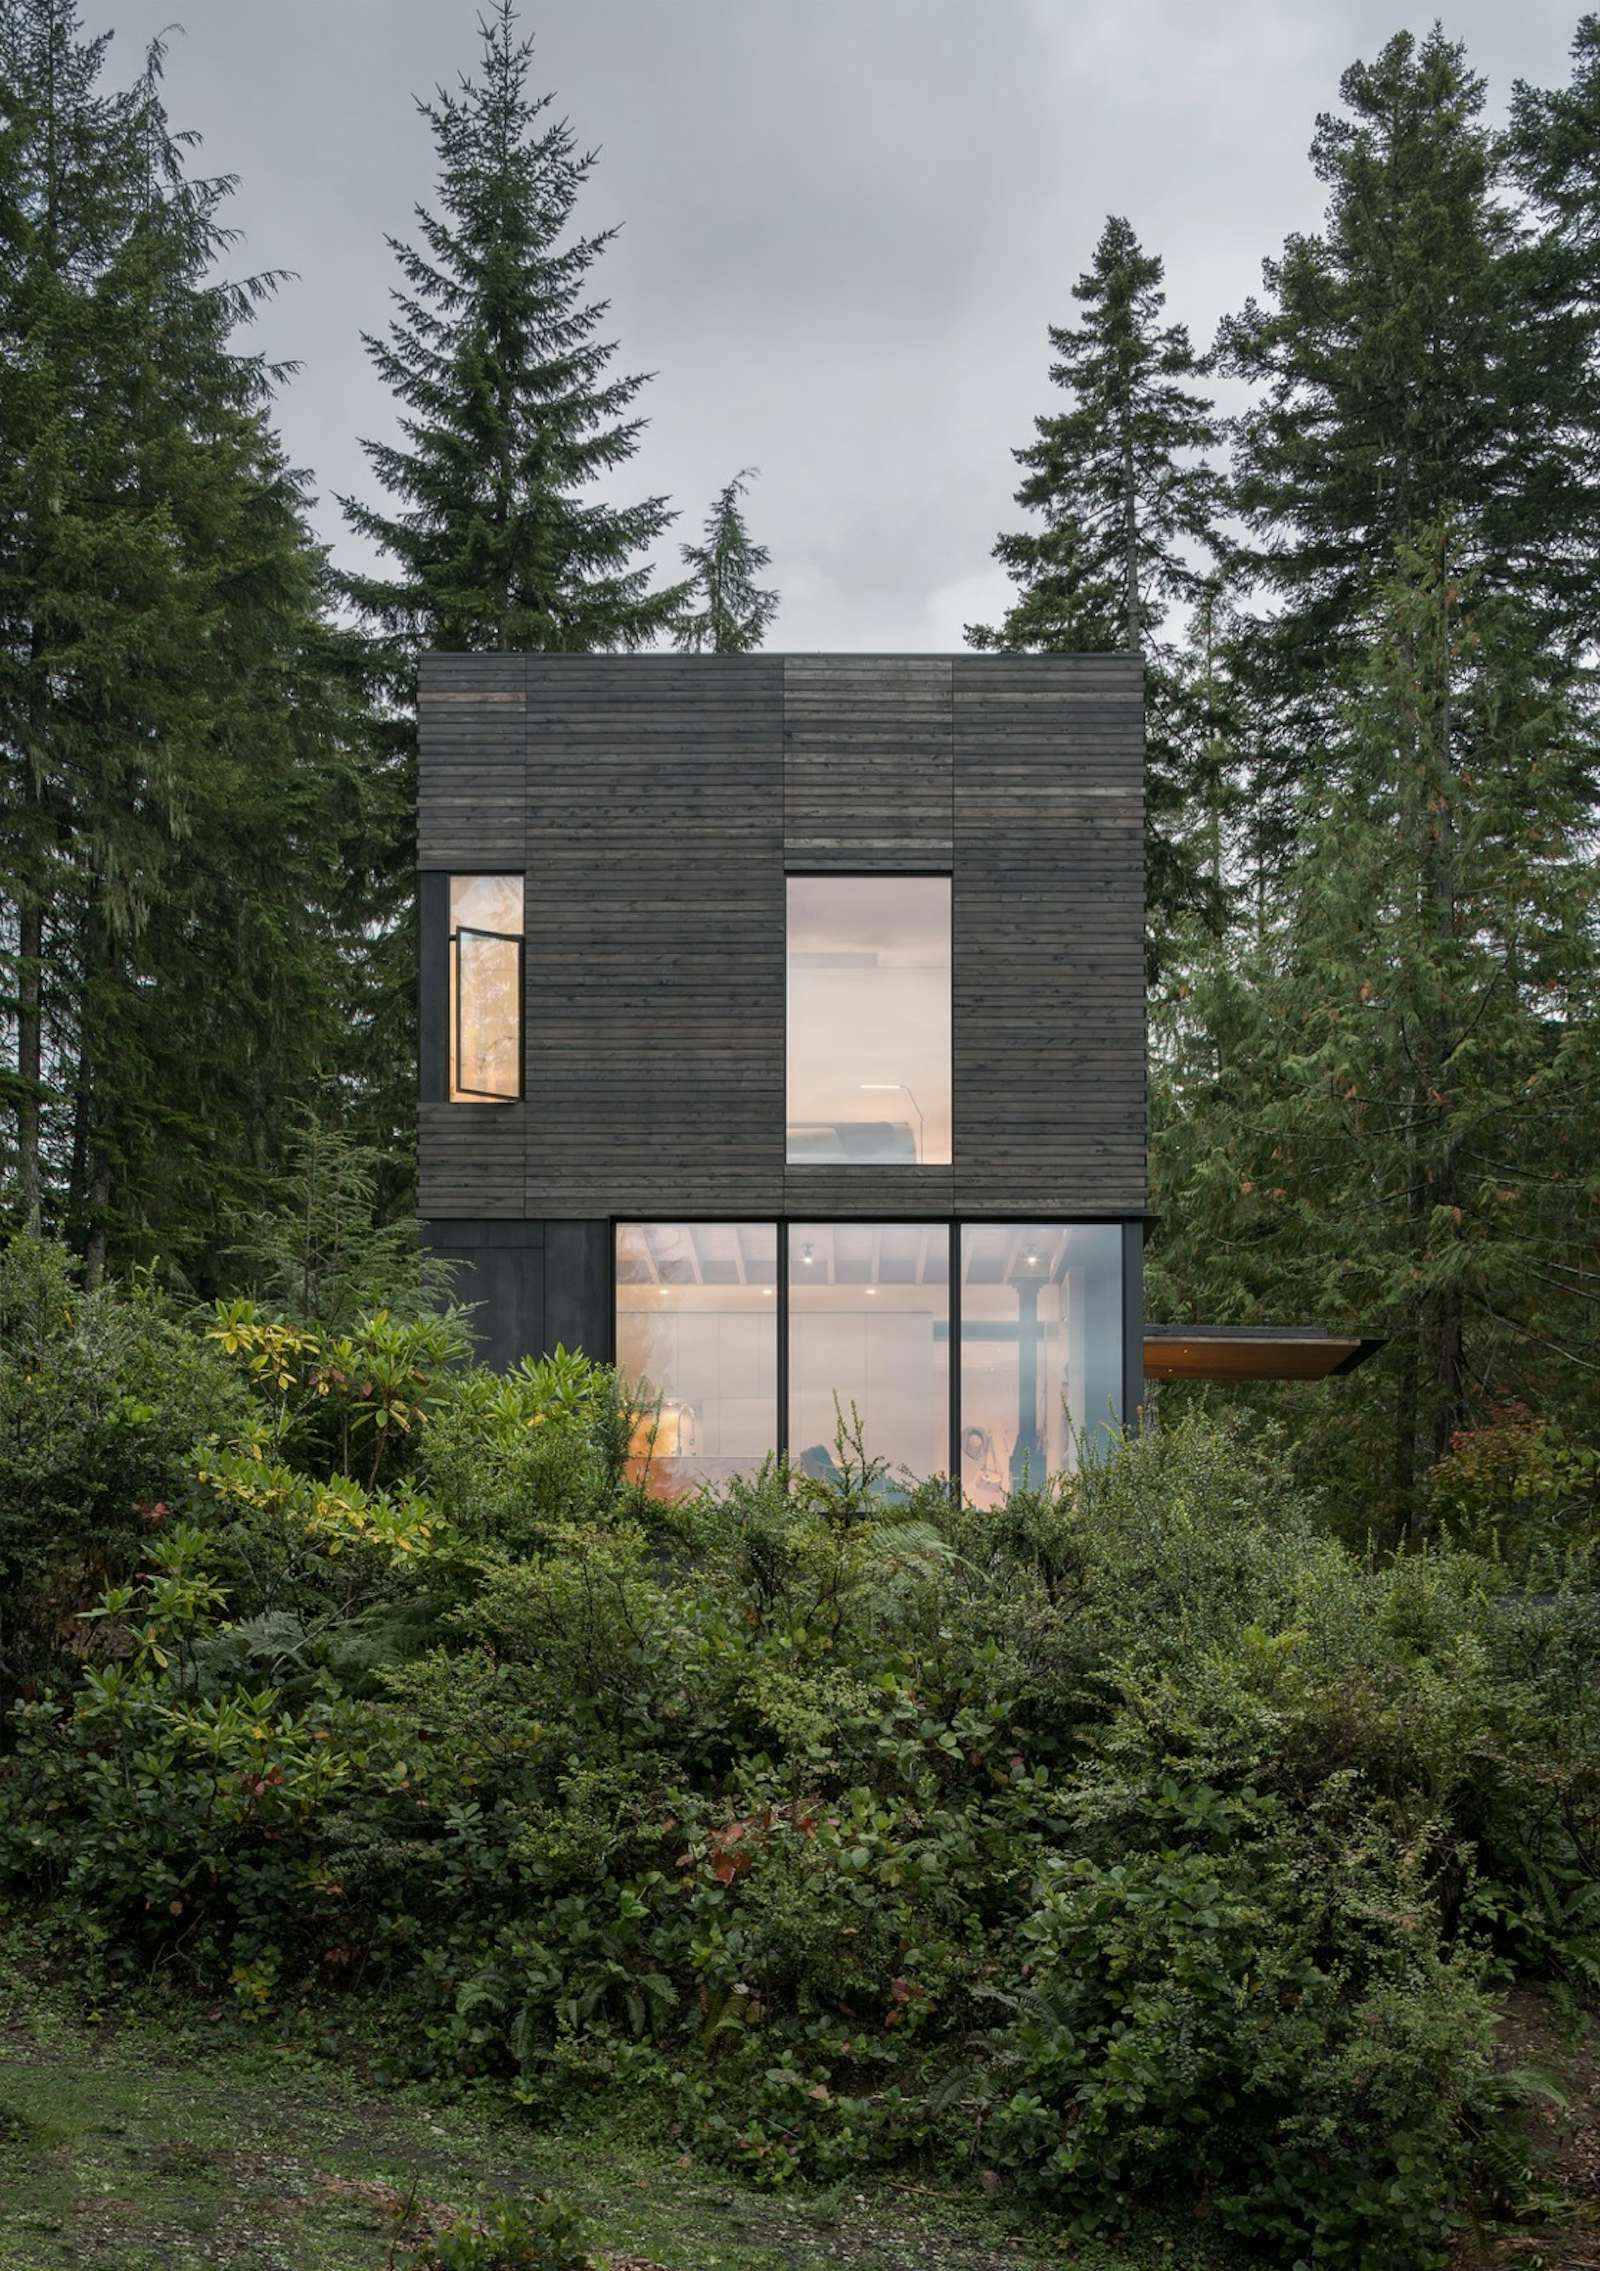 Petit chalet nordique minimaliste à toit plat de deux étages avec revêtements de lattes de bois horizontal couleur gris foncé, implanté dans une forêt verdoyante.